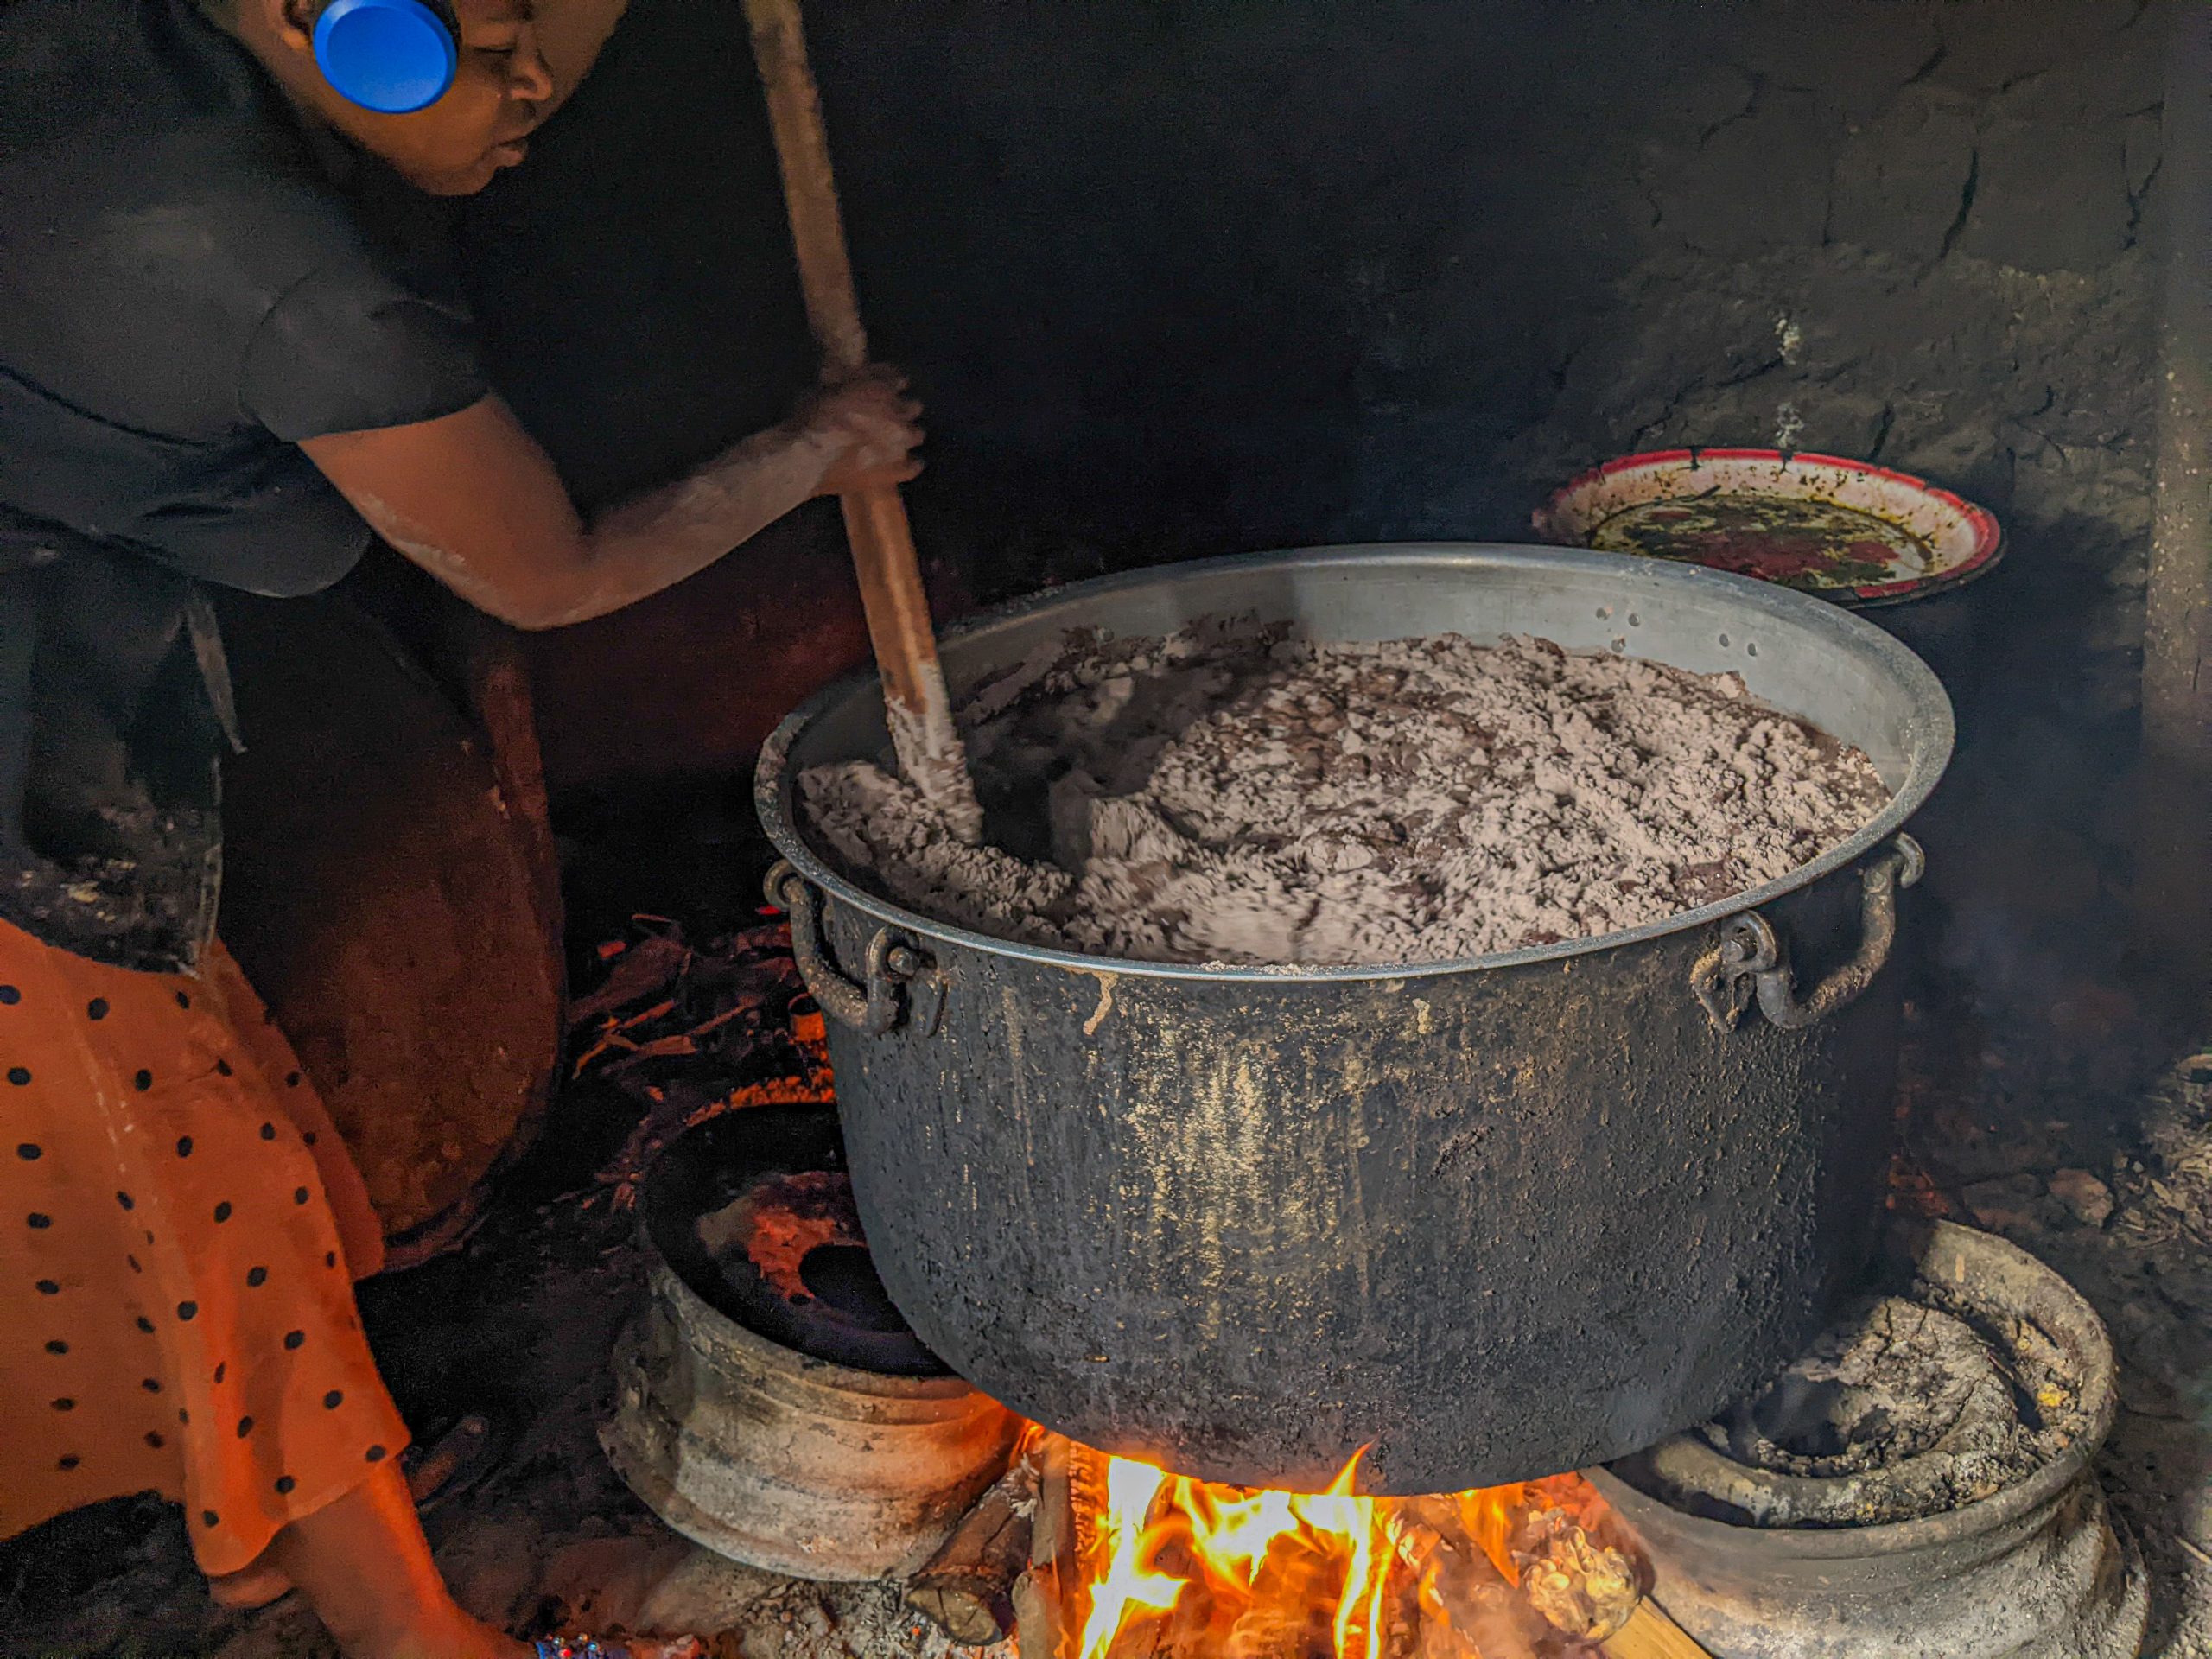 Connaissez-vous le musururu, boisson protéinée typique de RDC-Congo?